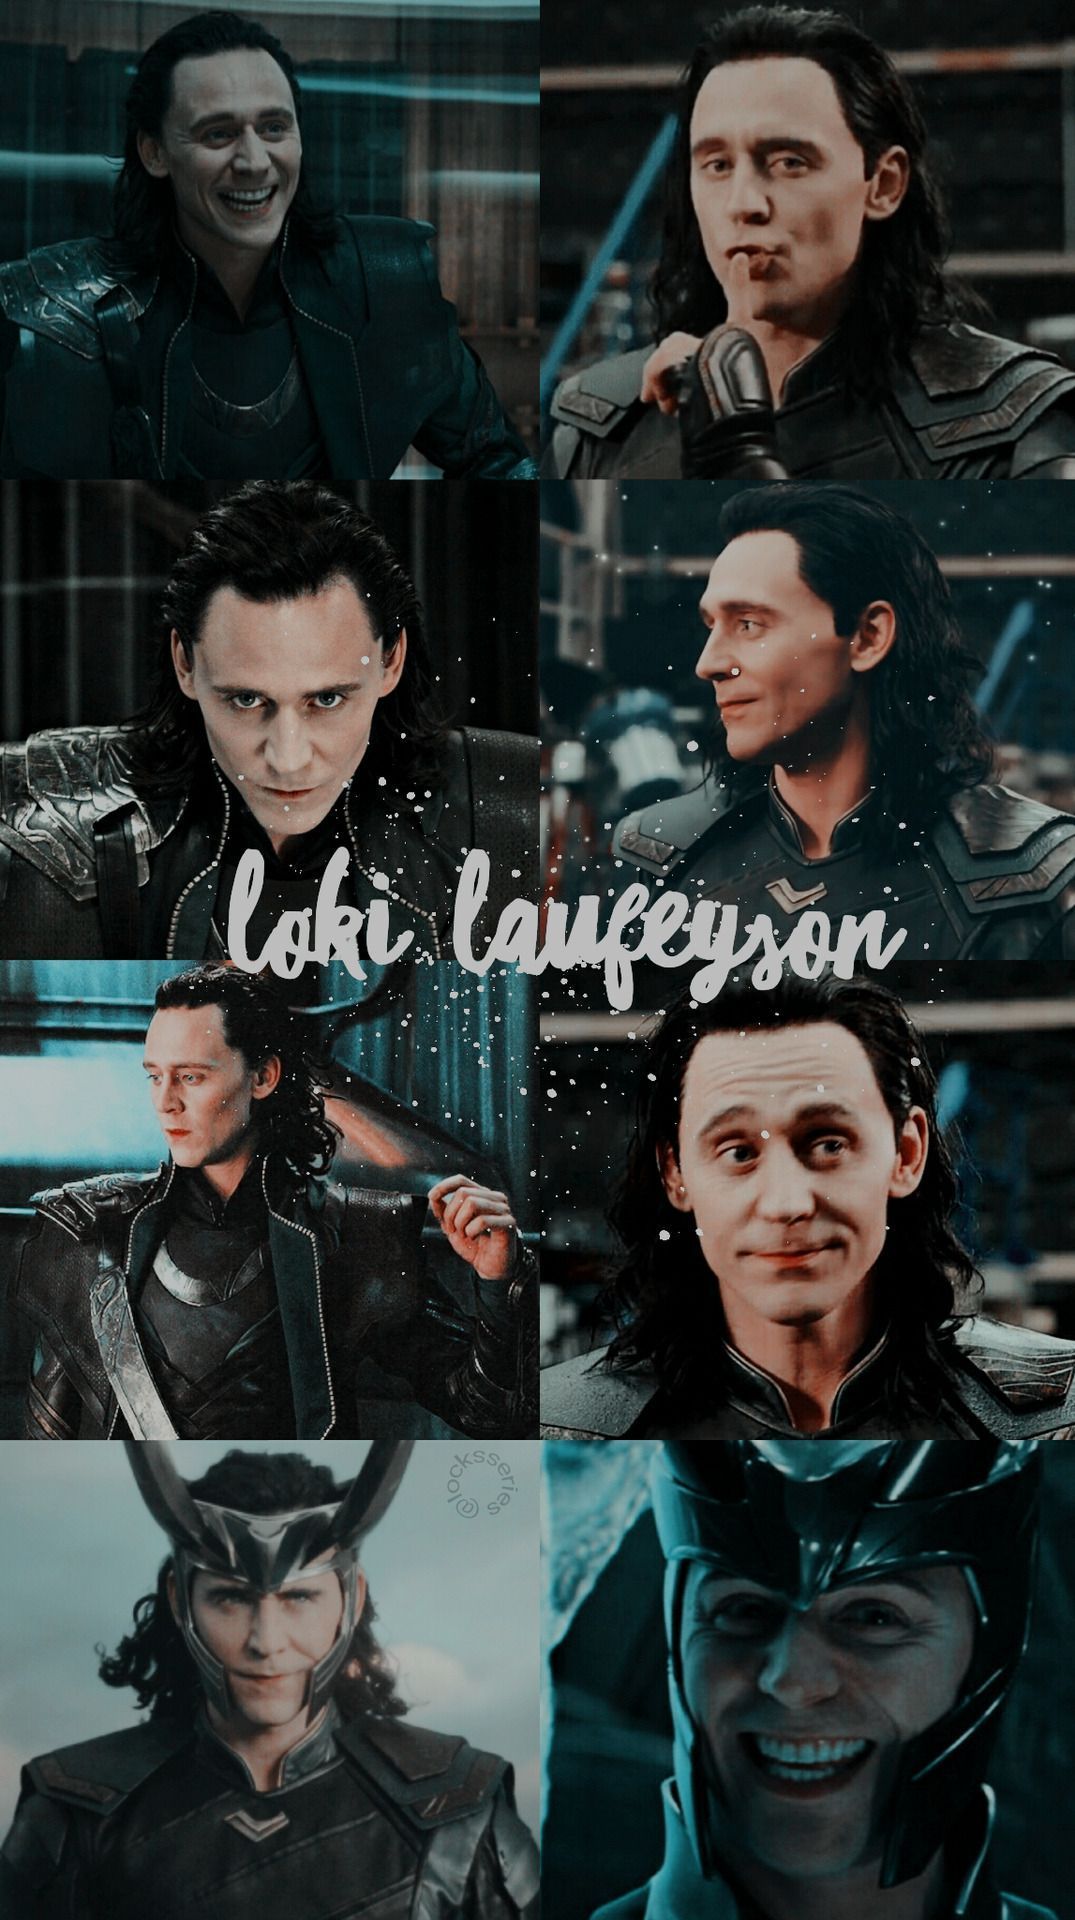 Loki laufeyson, avengers, and marvel image - Loki